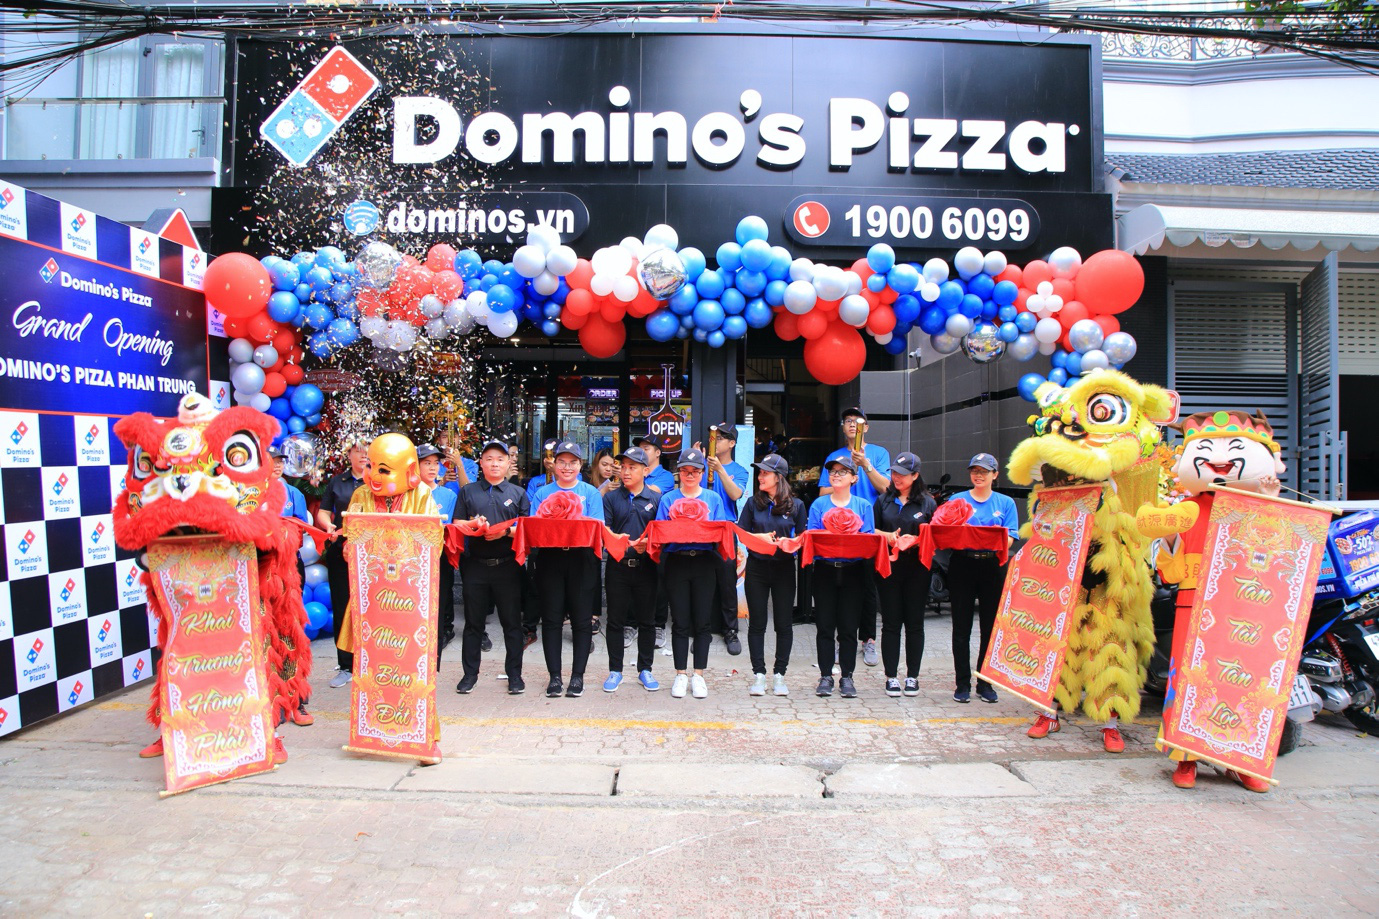 Domino’s – Thương hiệu Pizza hàng đầu thế giới đã “hạ cánh” tại Biên Hoà, đánh dấu sự phát triển chuỗi hệ thống Pizza Mỹ tại các tỉnh thành - Ảnh 1.